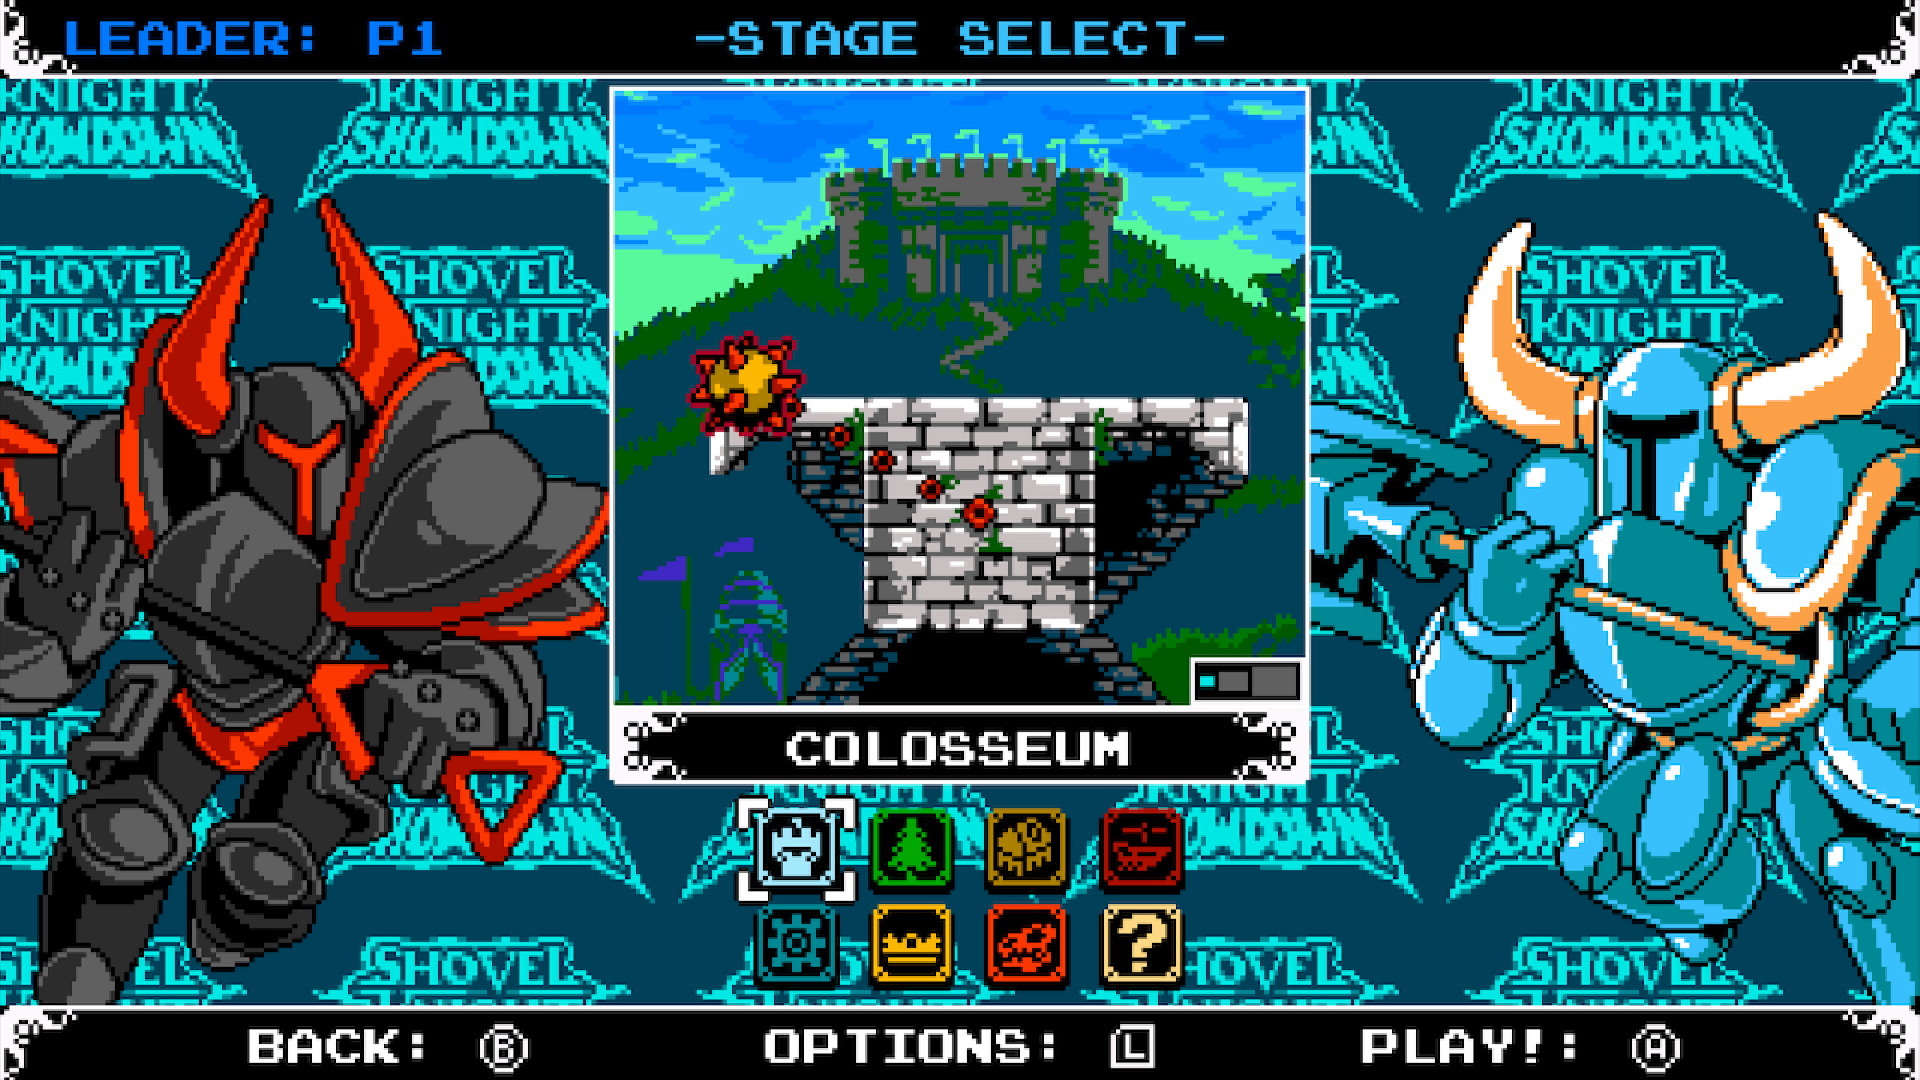 Shovel Knight: Showdown - screenshot 5